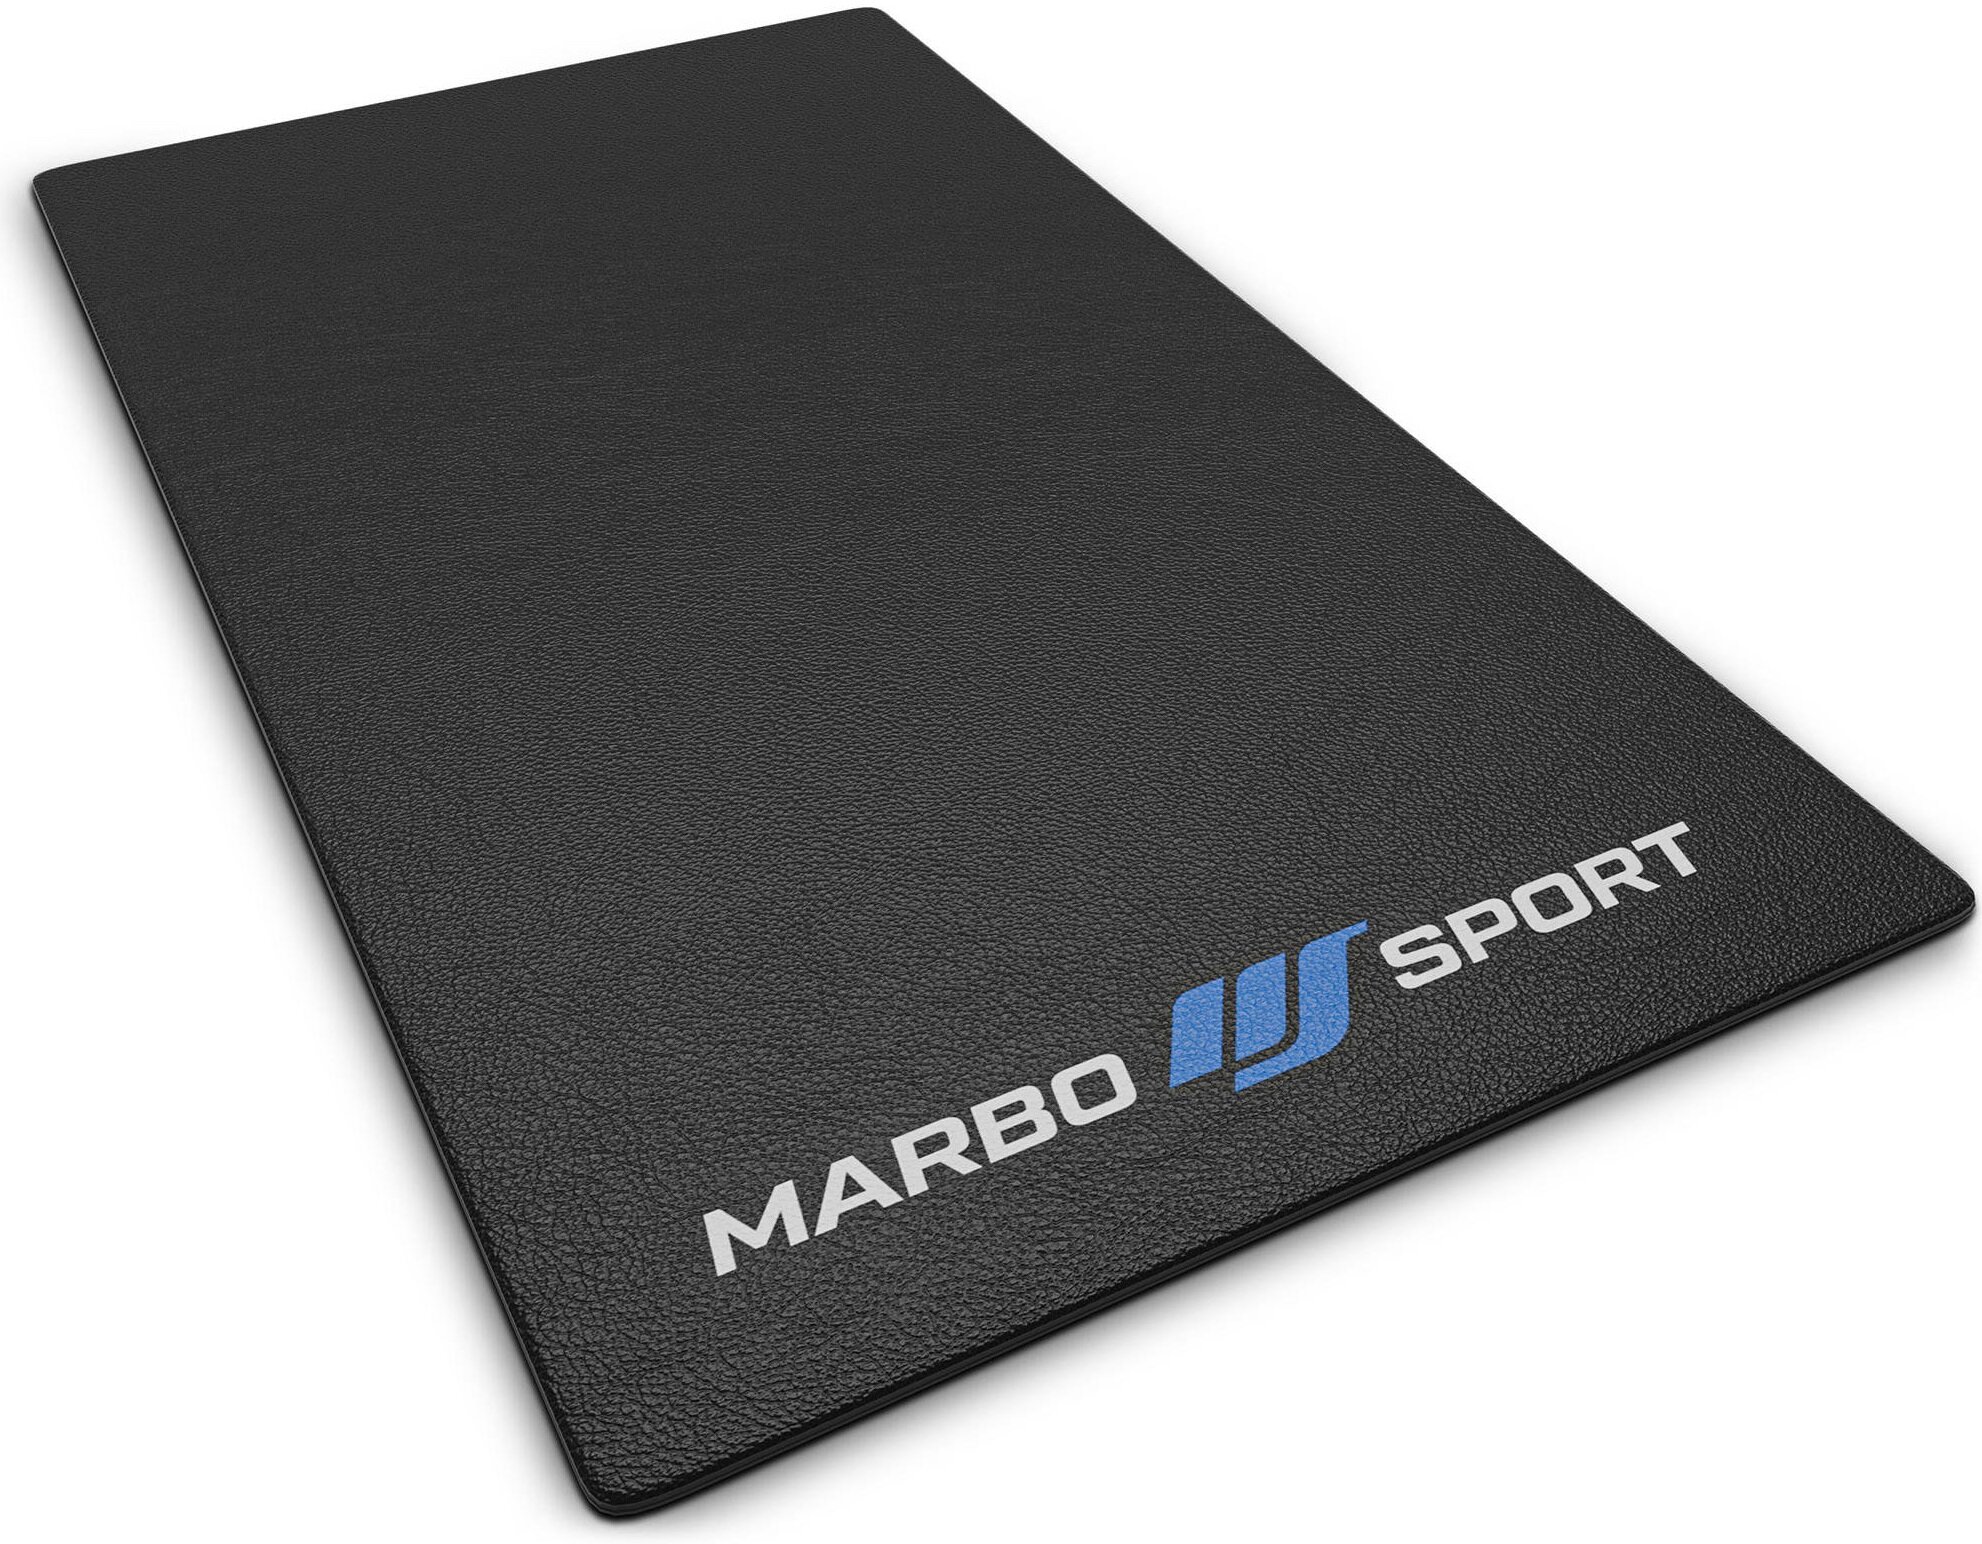 MARBO SPORT 1009163 Mata pod sprzęt fitness - niskie ceny i opinie w Media  Expert